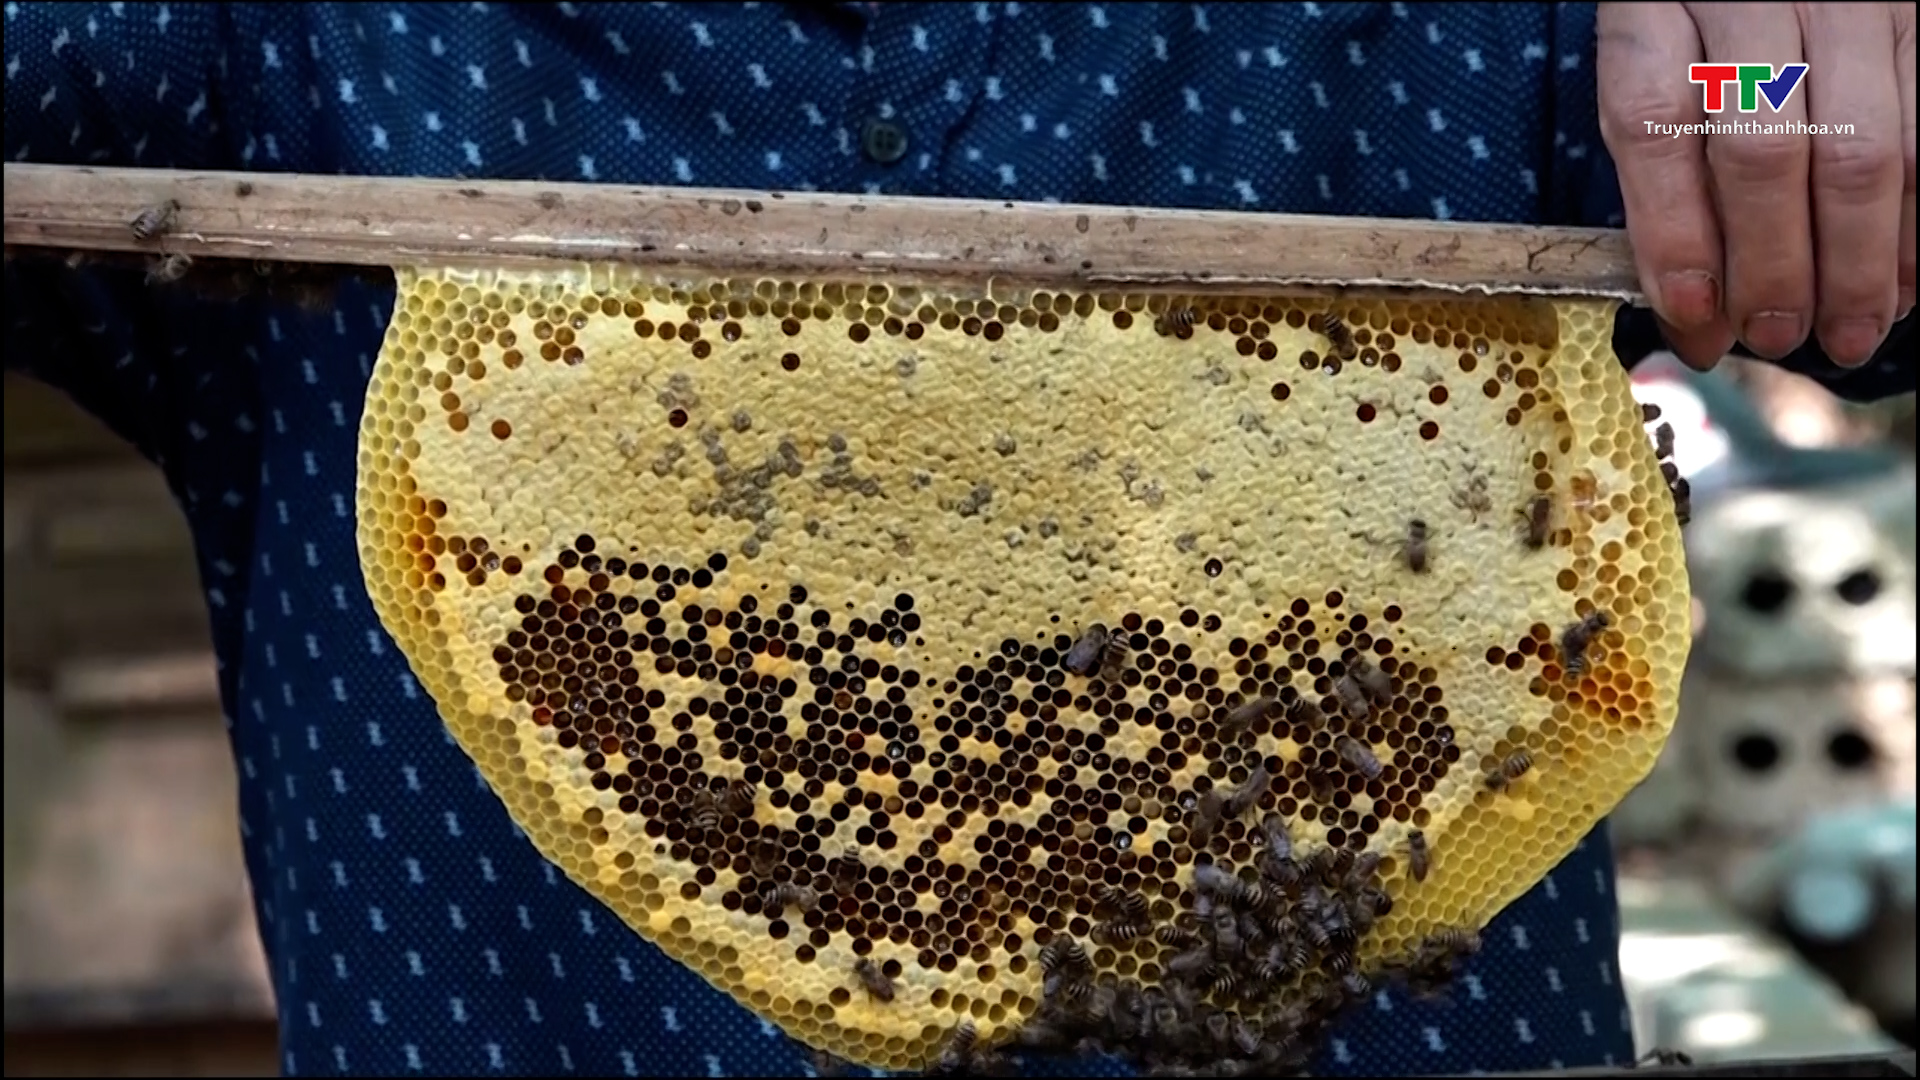 Hiệu quả kinh tế từ nghề nuôi ong lấy mật tại xã Xuân Bình - Ảnh 3.